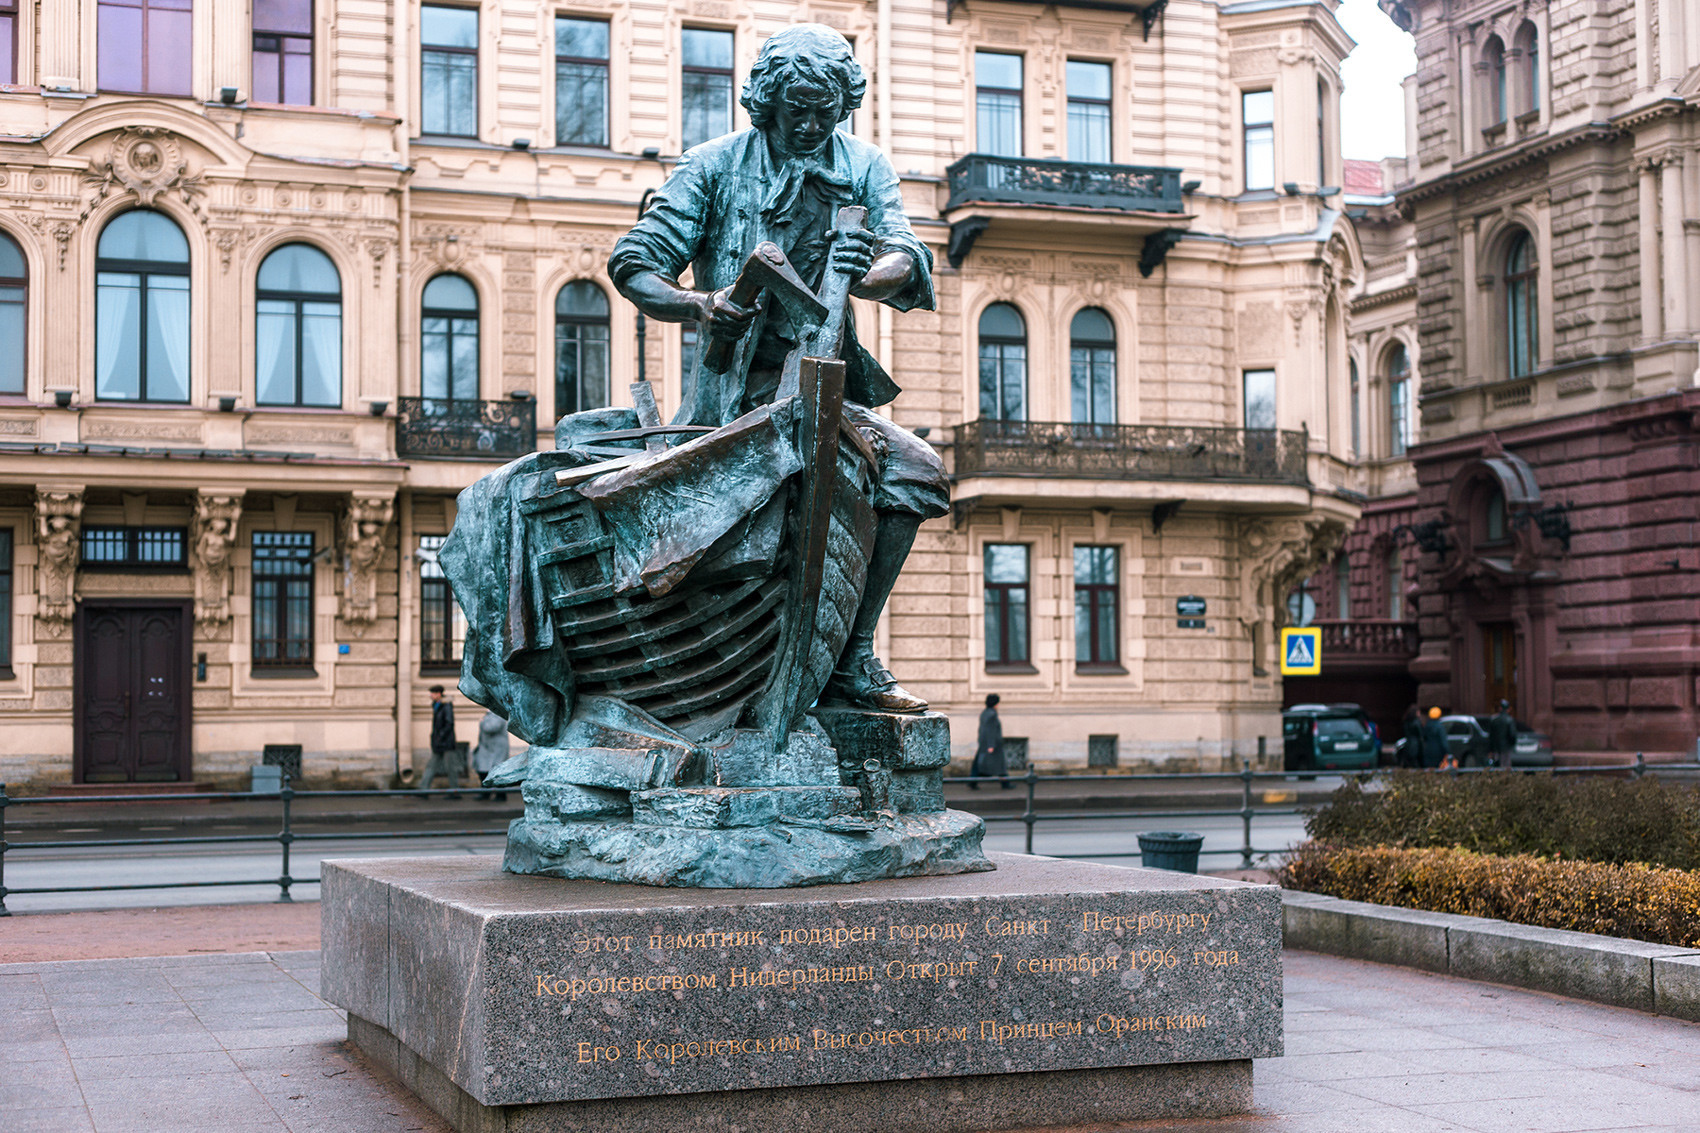 Monumento a Pedro, o Grande, construtor naval. Localizado em São Petersburgo.
